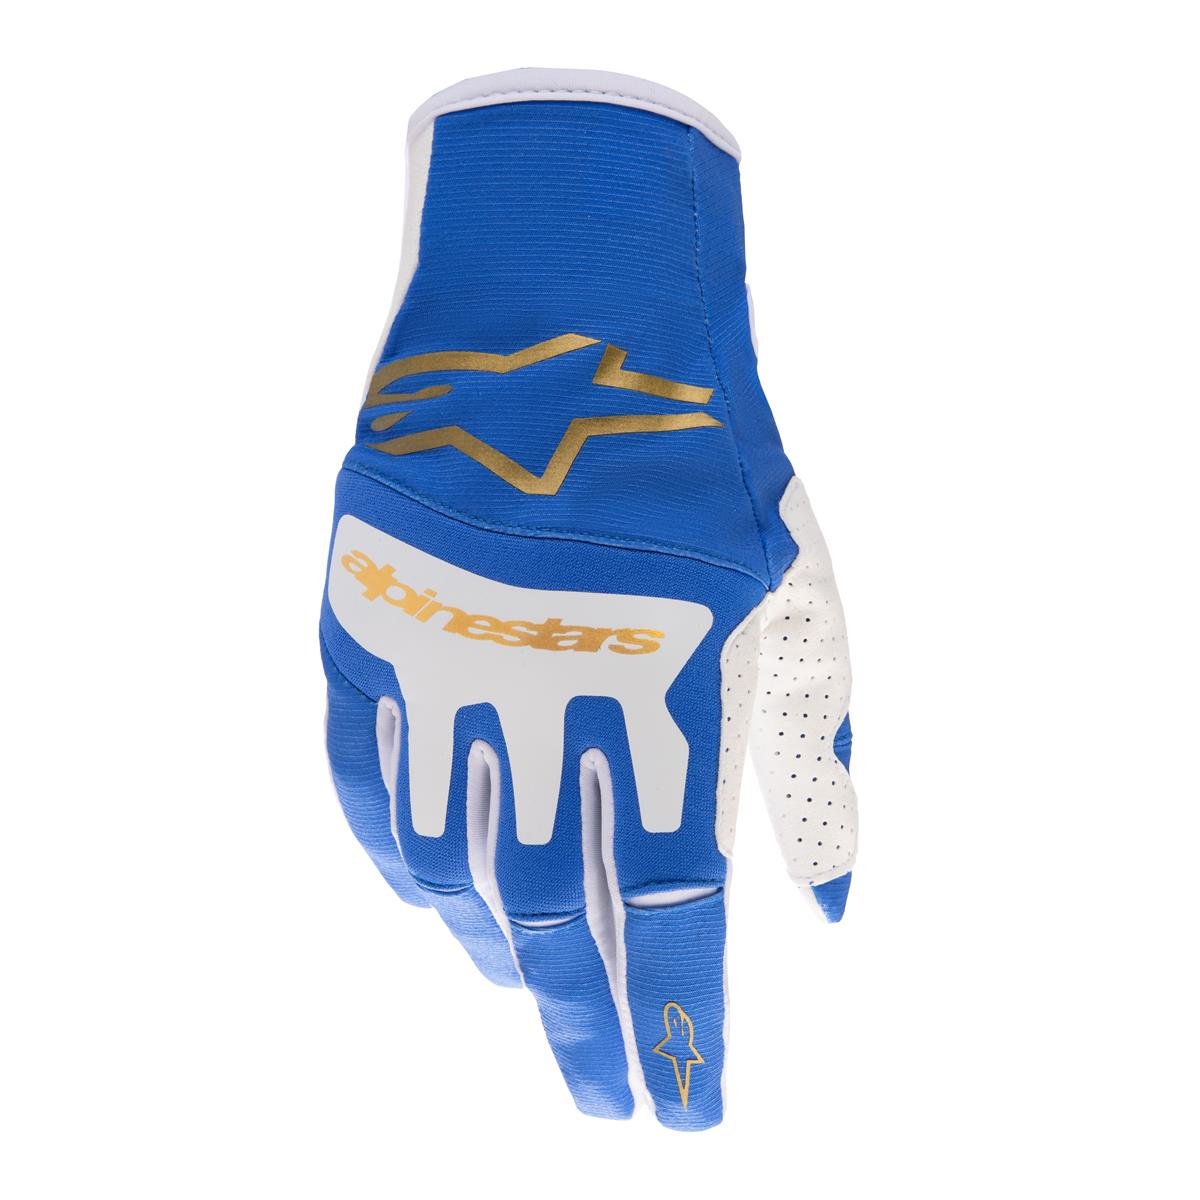 Alpinestars Gloves Techstar Blue/Gold